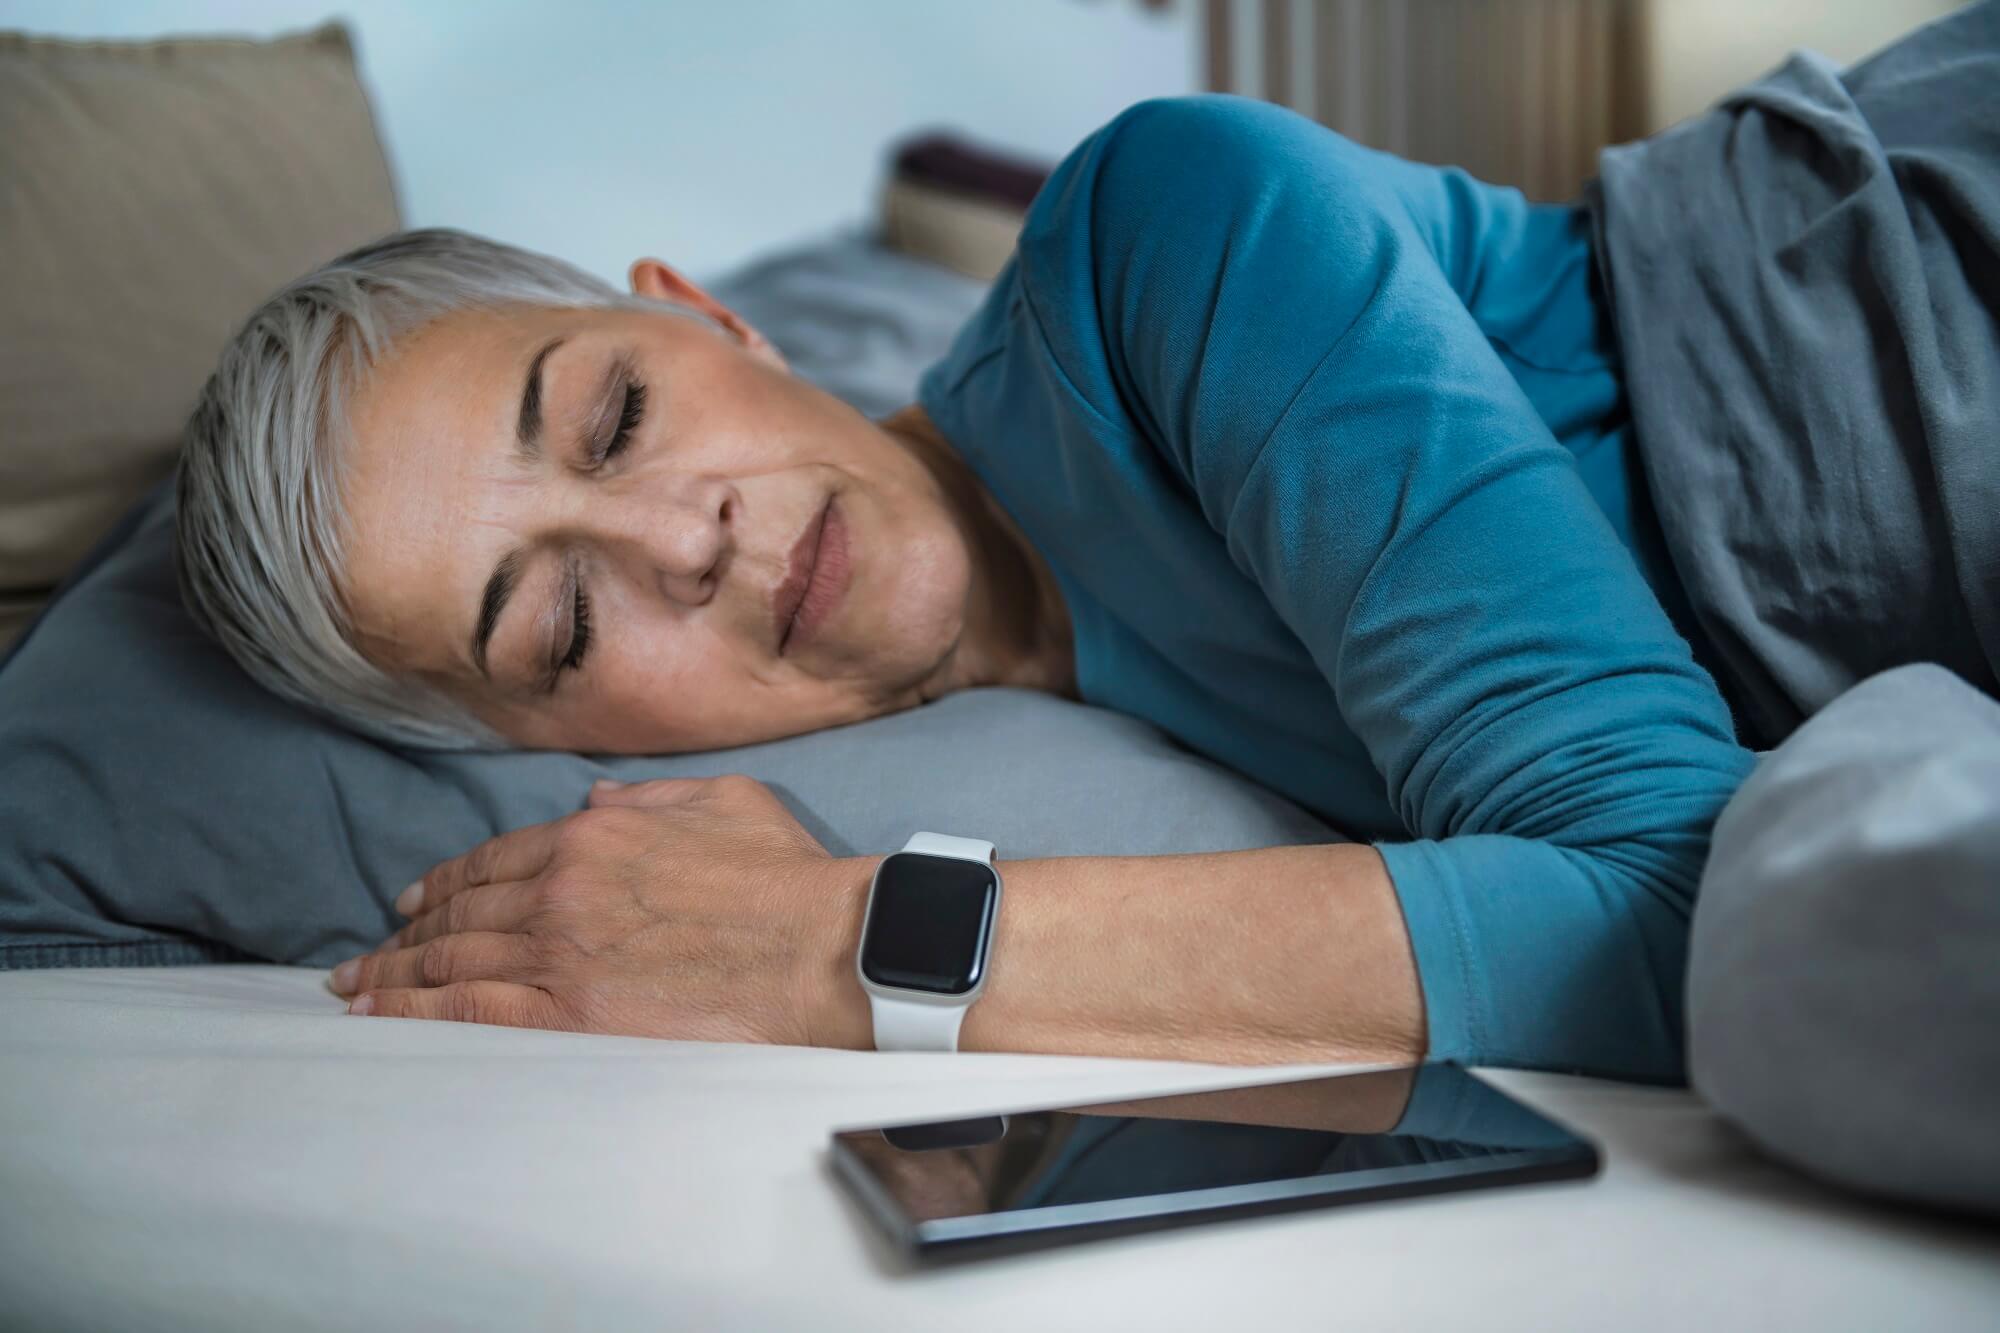  Women Using WatchOS 7 to Improve Her Sleeping Habits